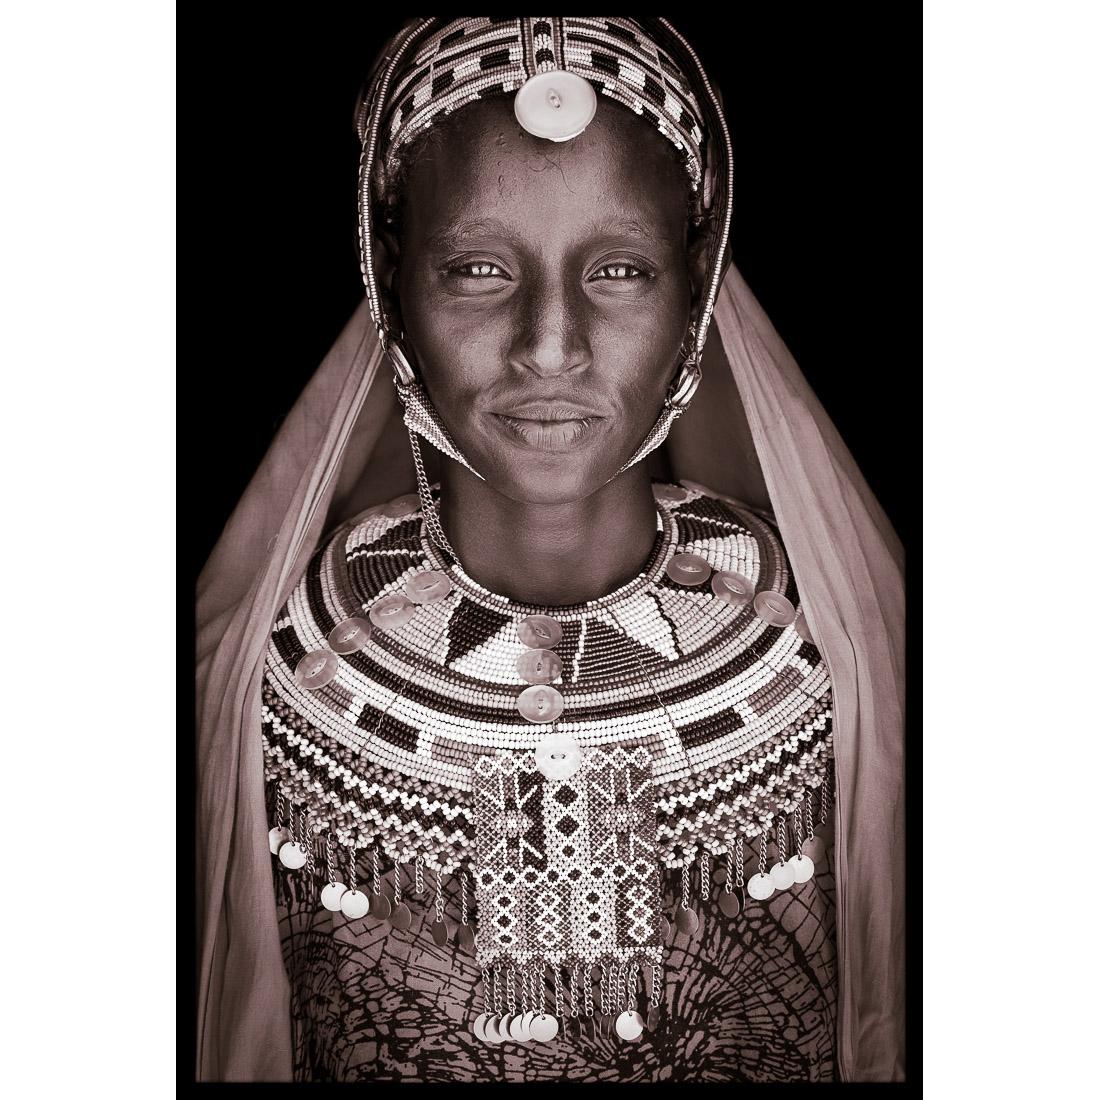 Portrait de Merayun, une femme Rendille du nord du Kenya, en 2019.

Le travail de John Kenny est entièrement tourné sur place, dans certains des coins les plus reculés d'Afrique. Ses images sont toutes prises à la lumière naturelle et ses sujets